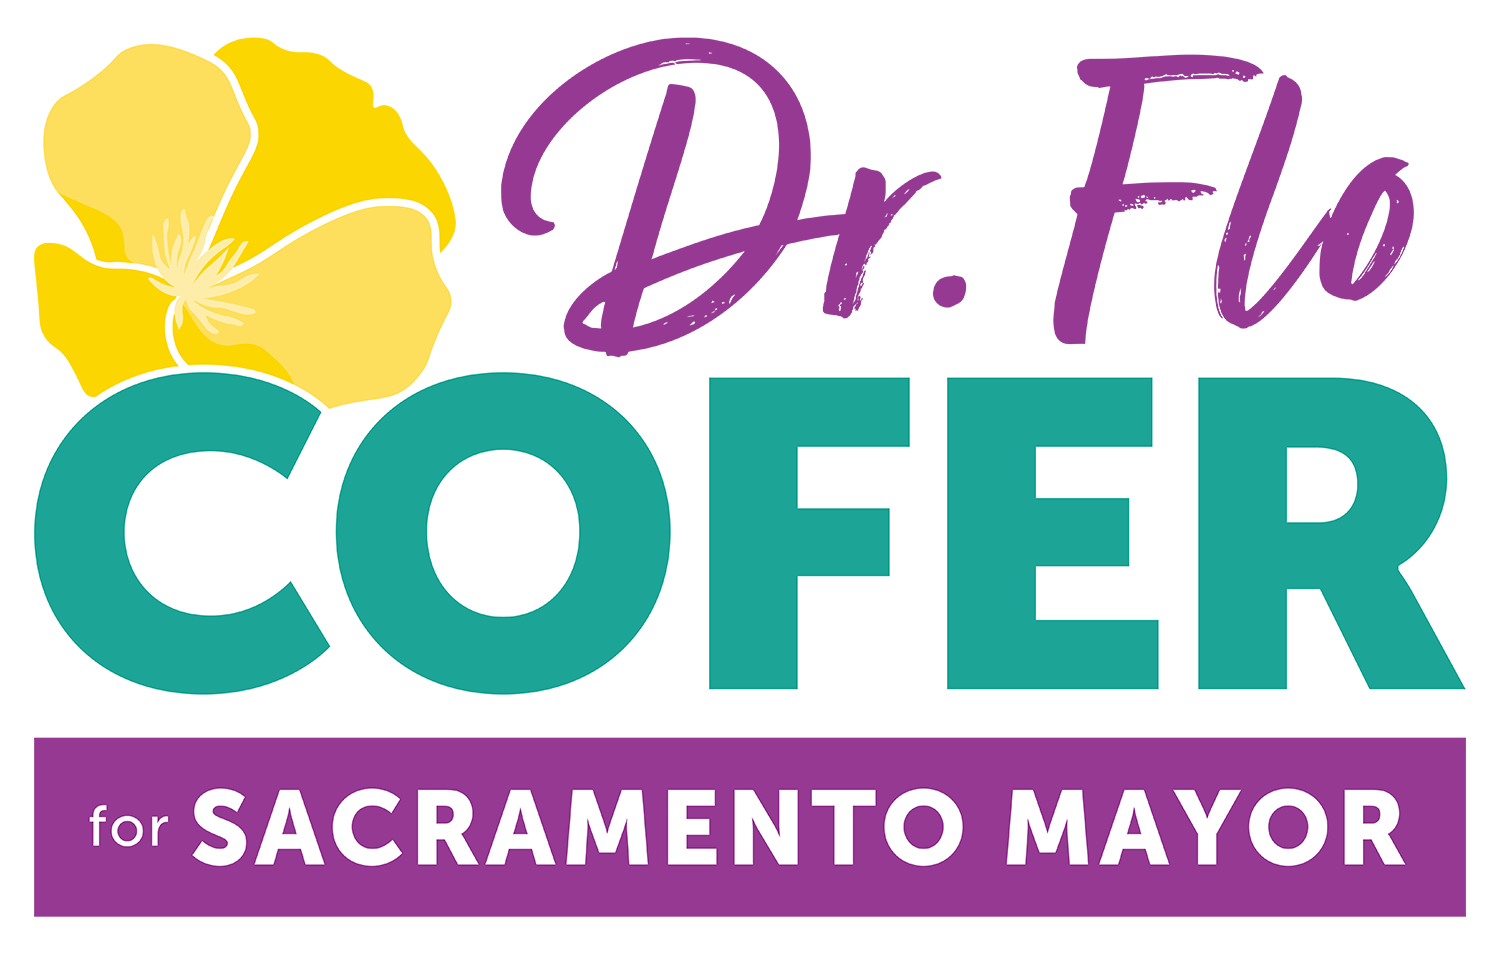 Dr. Flo Cofer for Sacramento Mayor